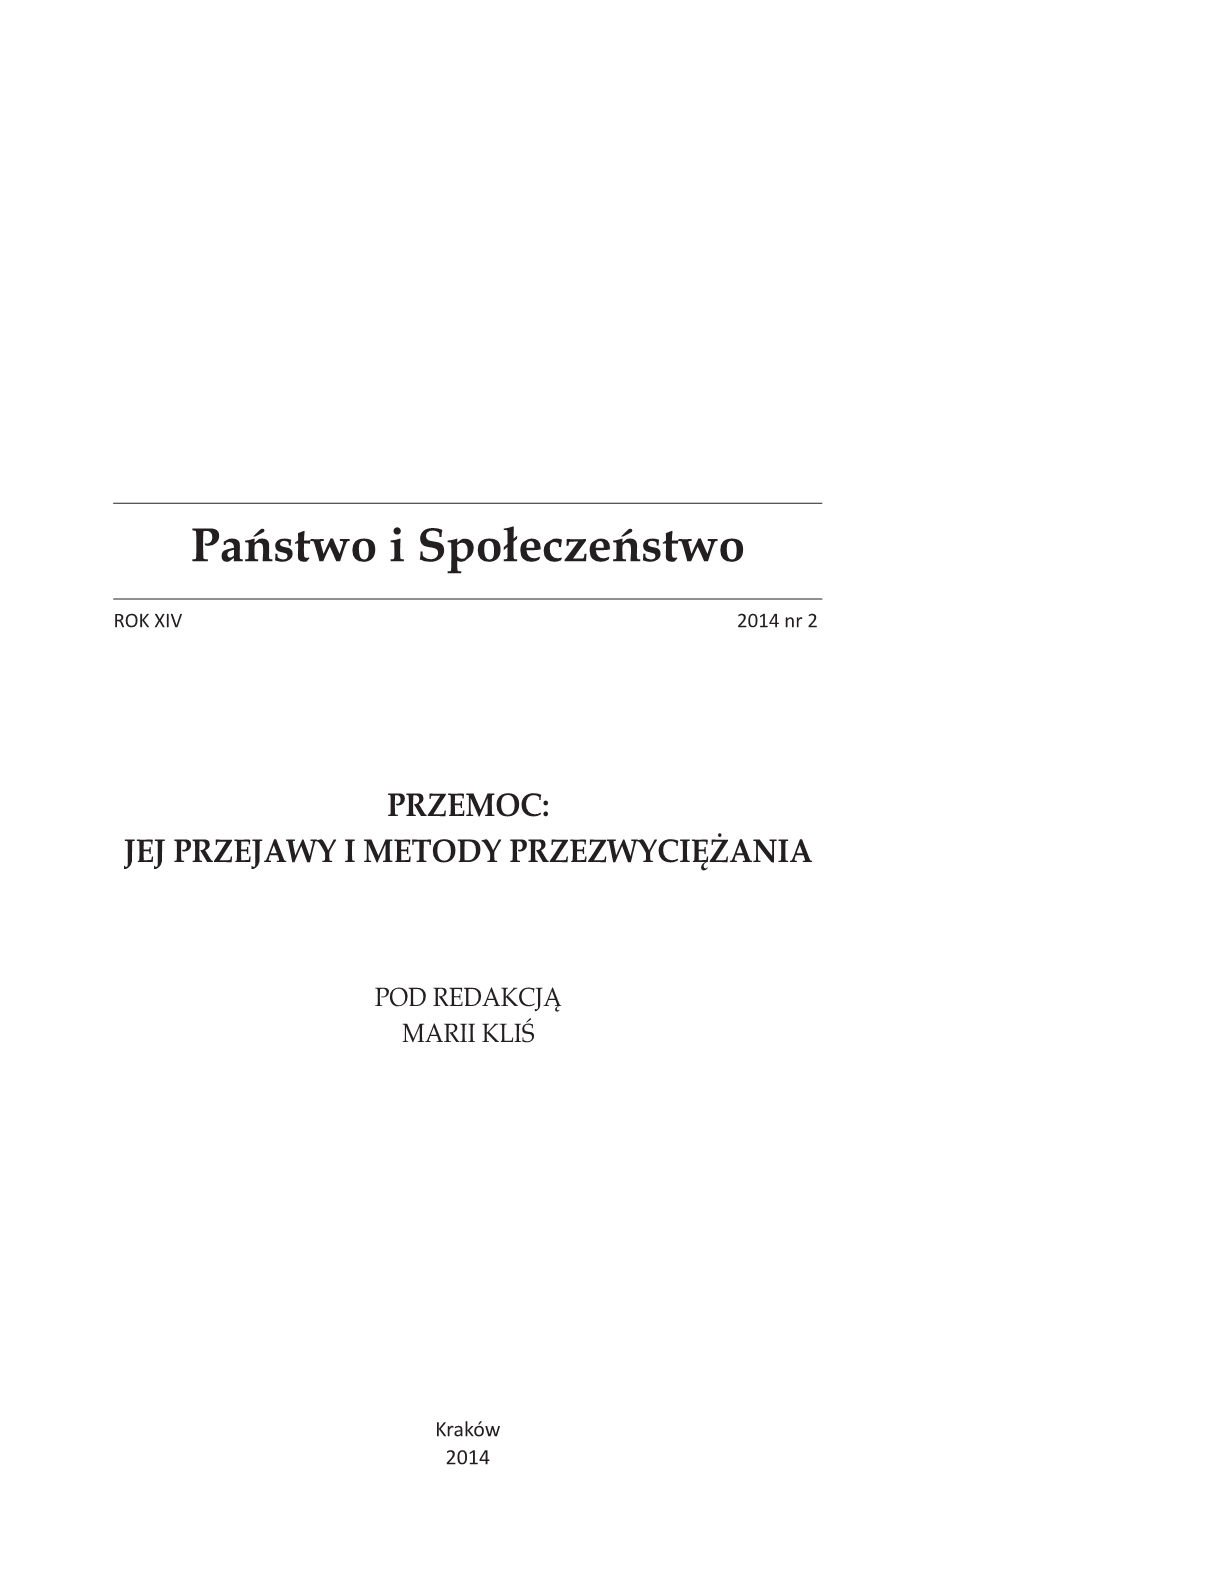 Prostytucja. Studium zjawiska, red. Robert Kowalczyk i Małgorzata Leśniak, [Oficyna Wydawnicza AFM, Kraków 2013, 253 pp.] Cover Image